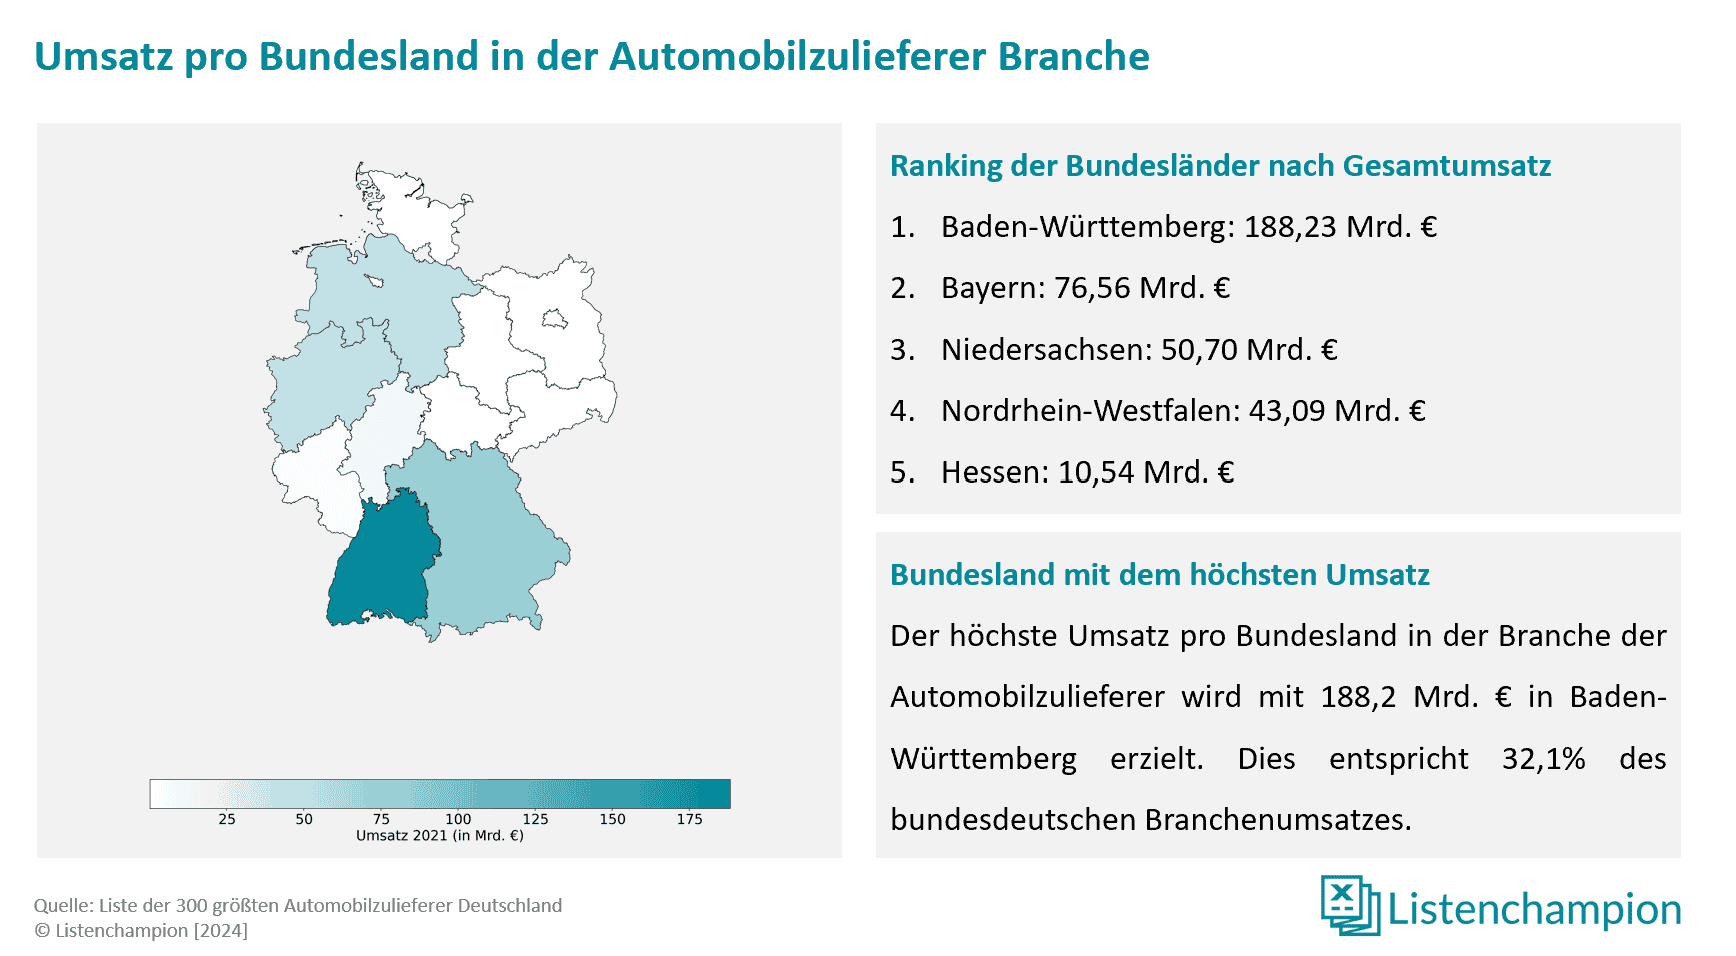 Marktanalyse und regionale verteilung deutscher Automobilzulieferer